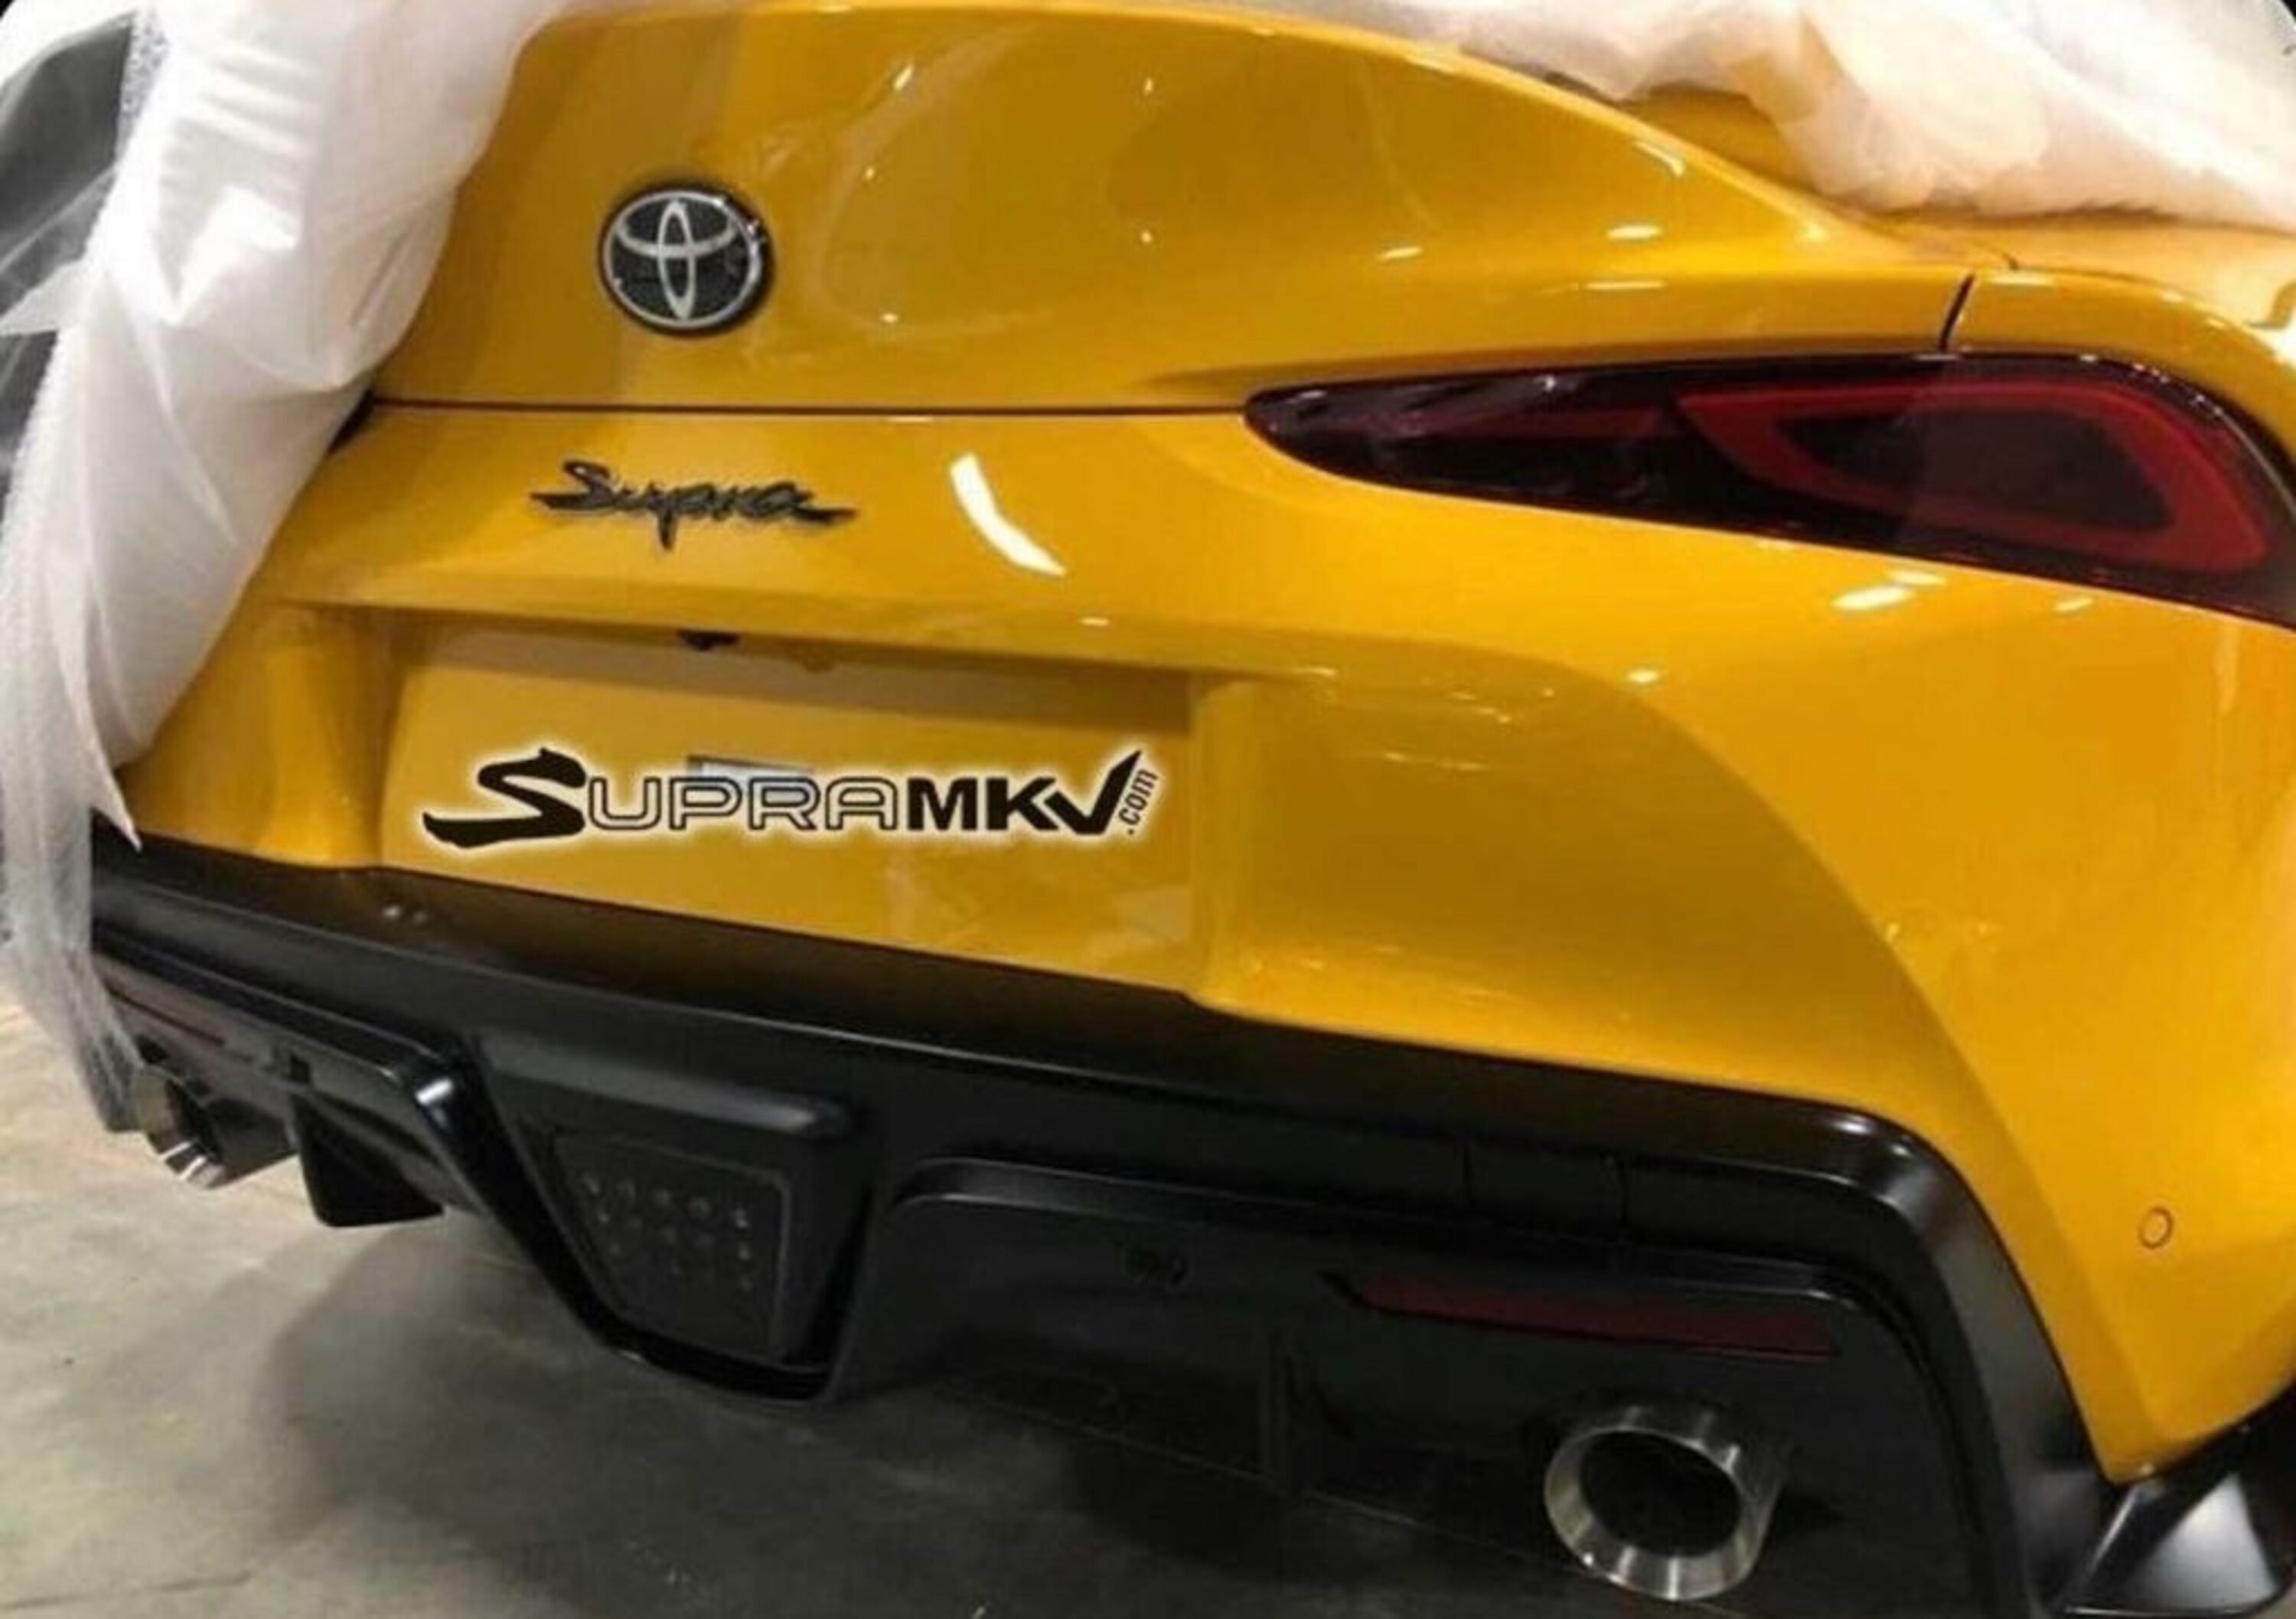 Toyota Supra 2019, una nuova foto mostra il posteriore